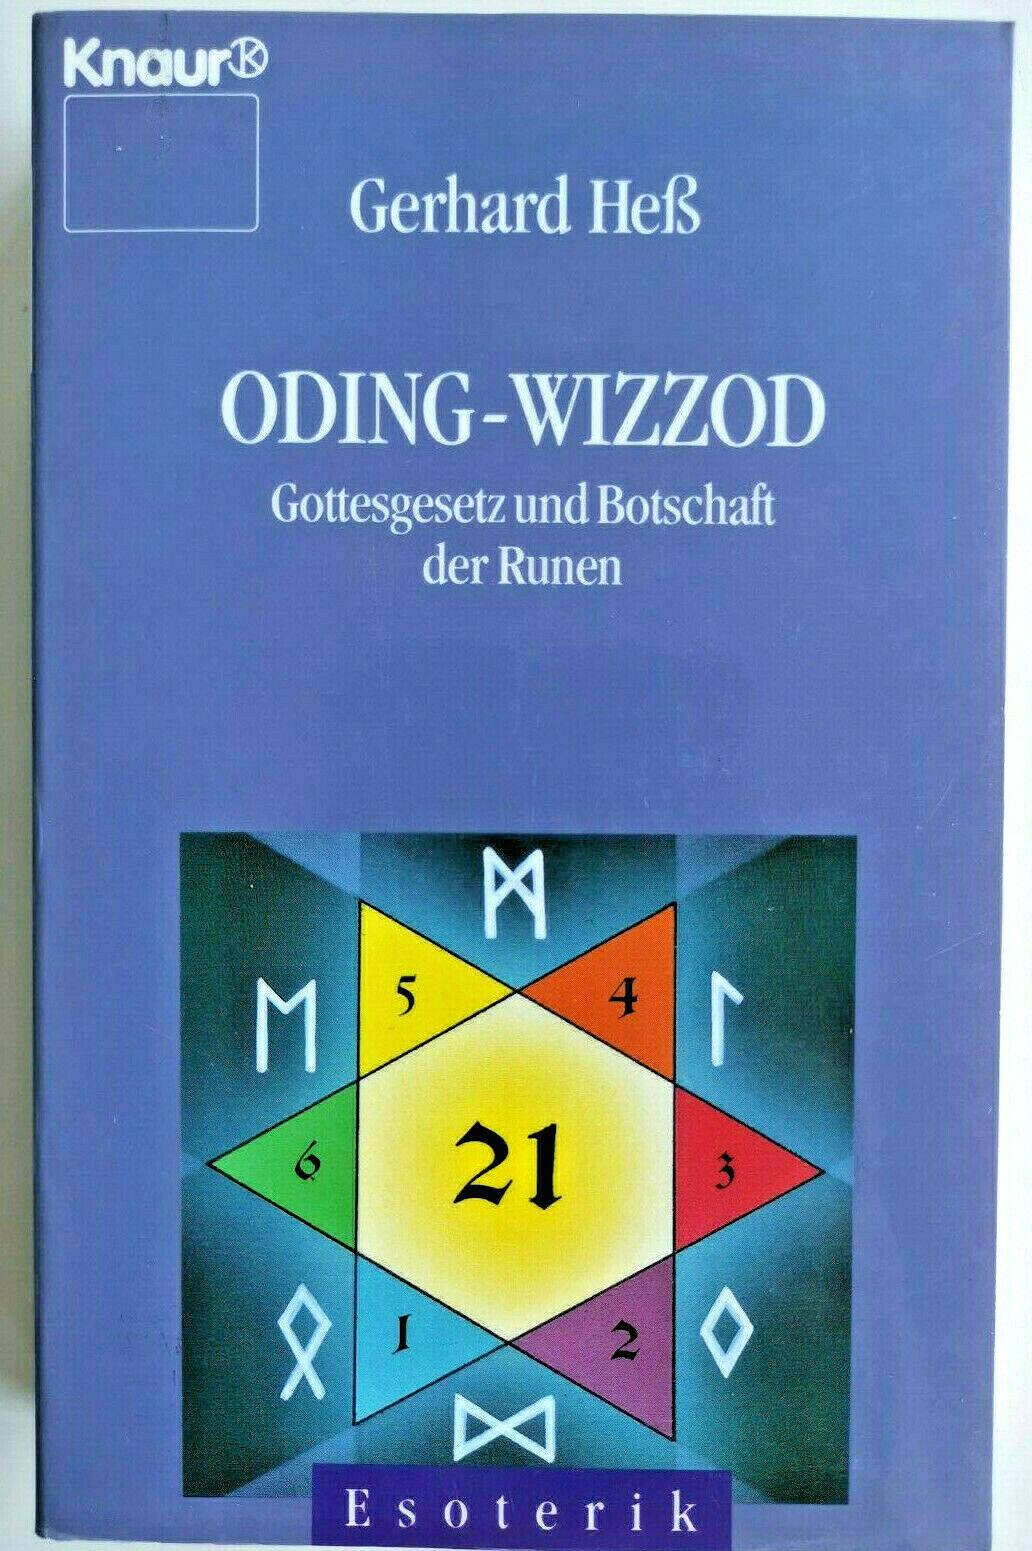 Oding - Wizzod Gottesgesetz und Botschaft der Runen Gerhard He